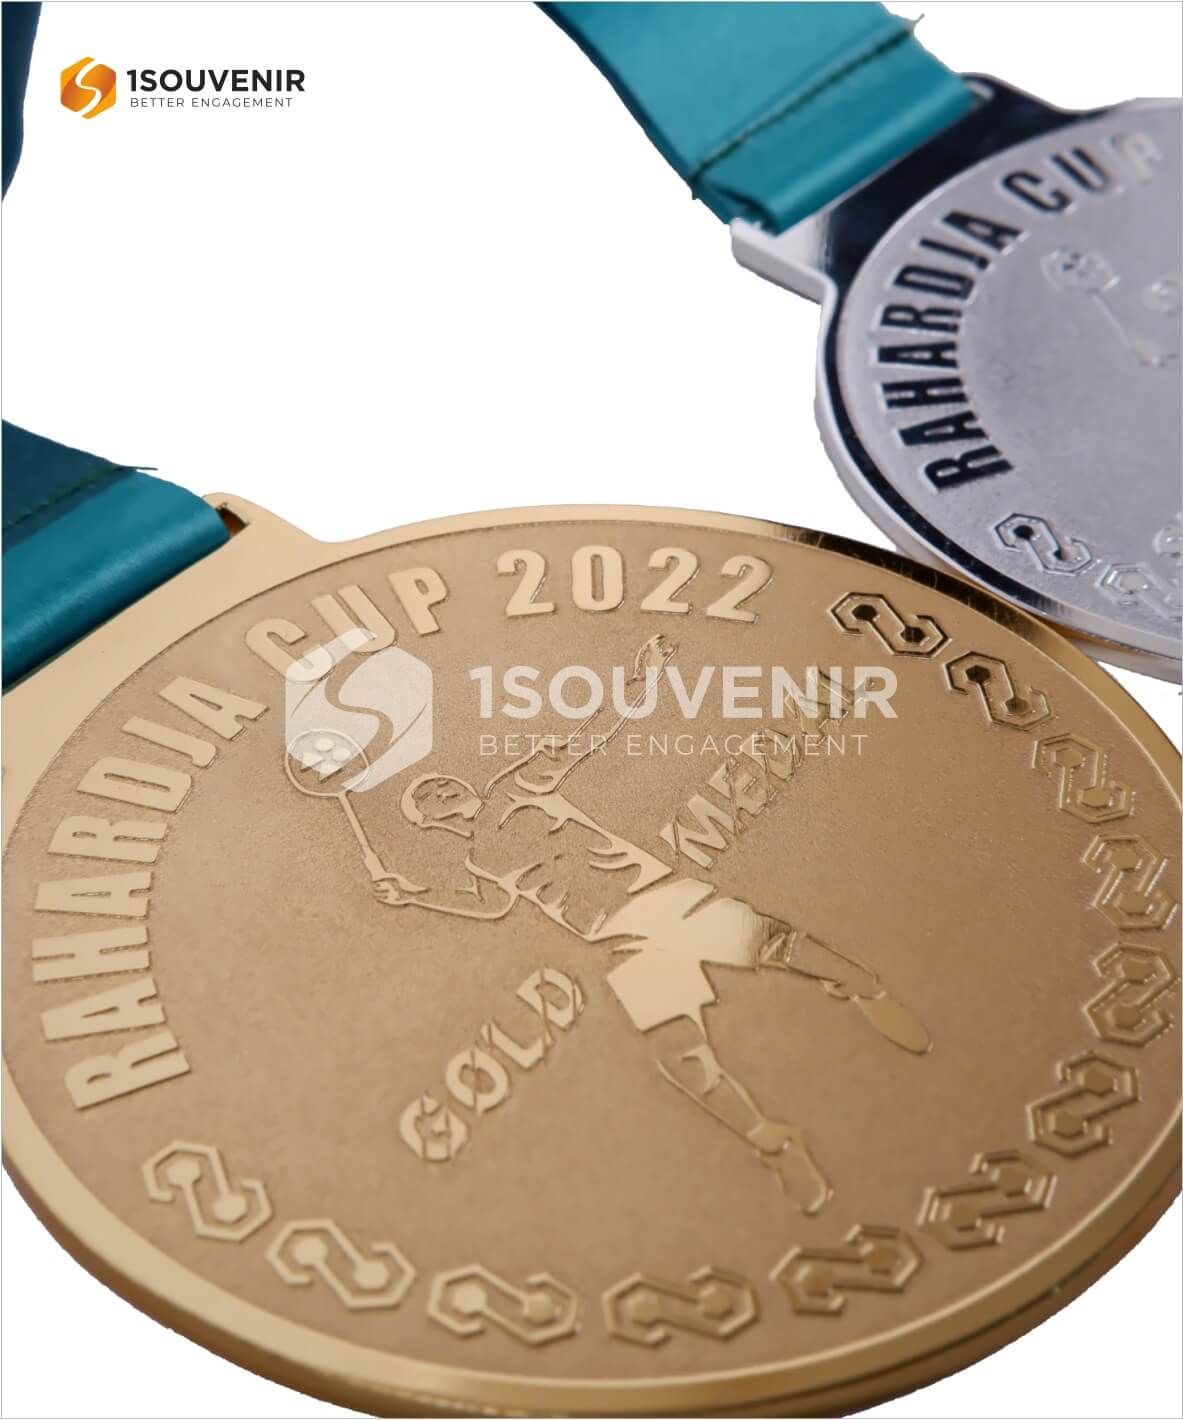 DETAIL_MED224 Medali Rahardja Cup 2022